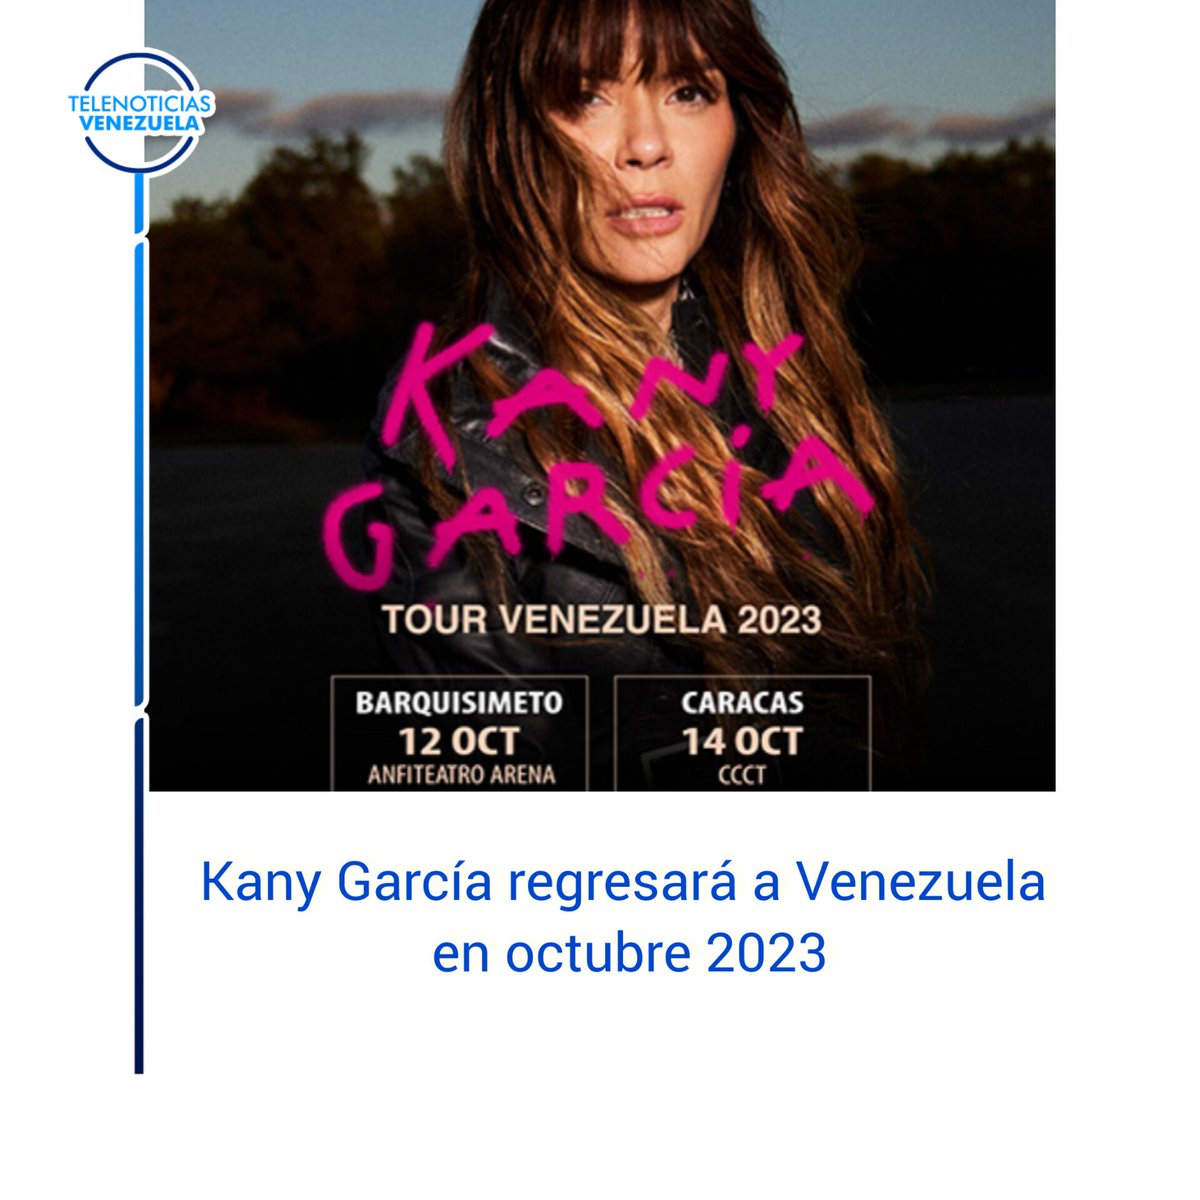 Las entradas para ambos espectáculos estarán disponibles a partir del próximo miércoles 15 de marzo y hasta ahora se desconoce el precio que tendrán.

#telenoticiasvenezuela #noticias #concierto #cantante #barquisimeto #caracas #VenezuelaMonumental